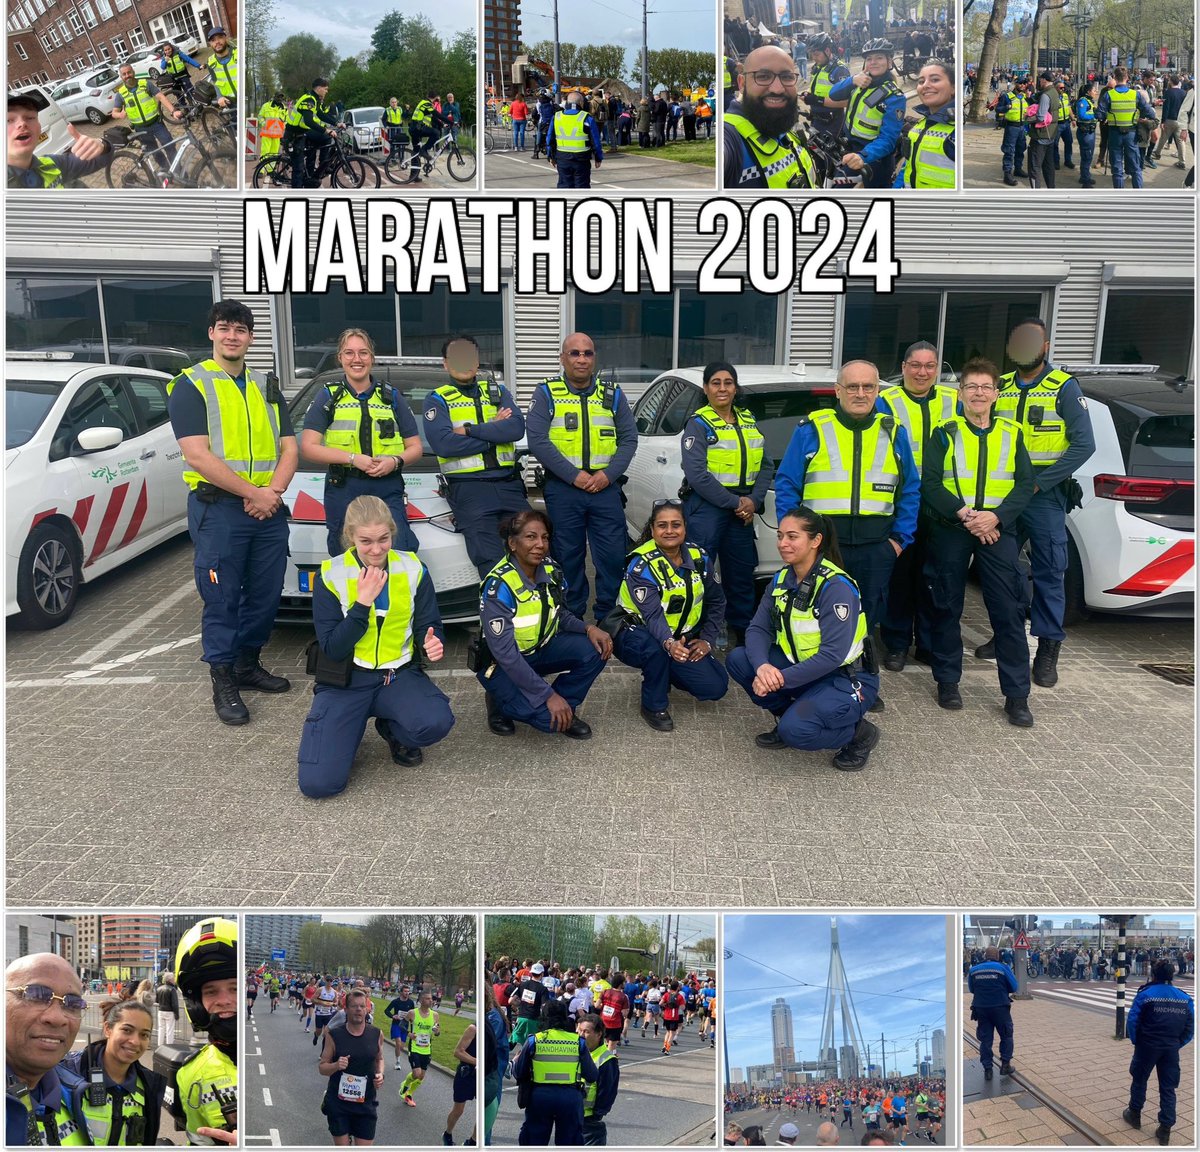 #Marathon 2024 #Rotterdam, in Zuid bleef de sfeer gemoedelijk en gezellig met muziek tijdens de route. We kregen veel vragen over hoe men naar de snelweg kon gaan ivm alle afzettingen. #ZichtbaarAanwezig
#Gastheerschap^OS